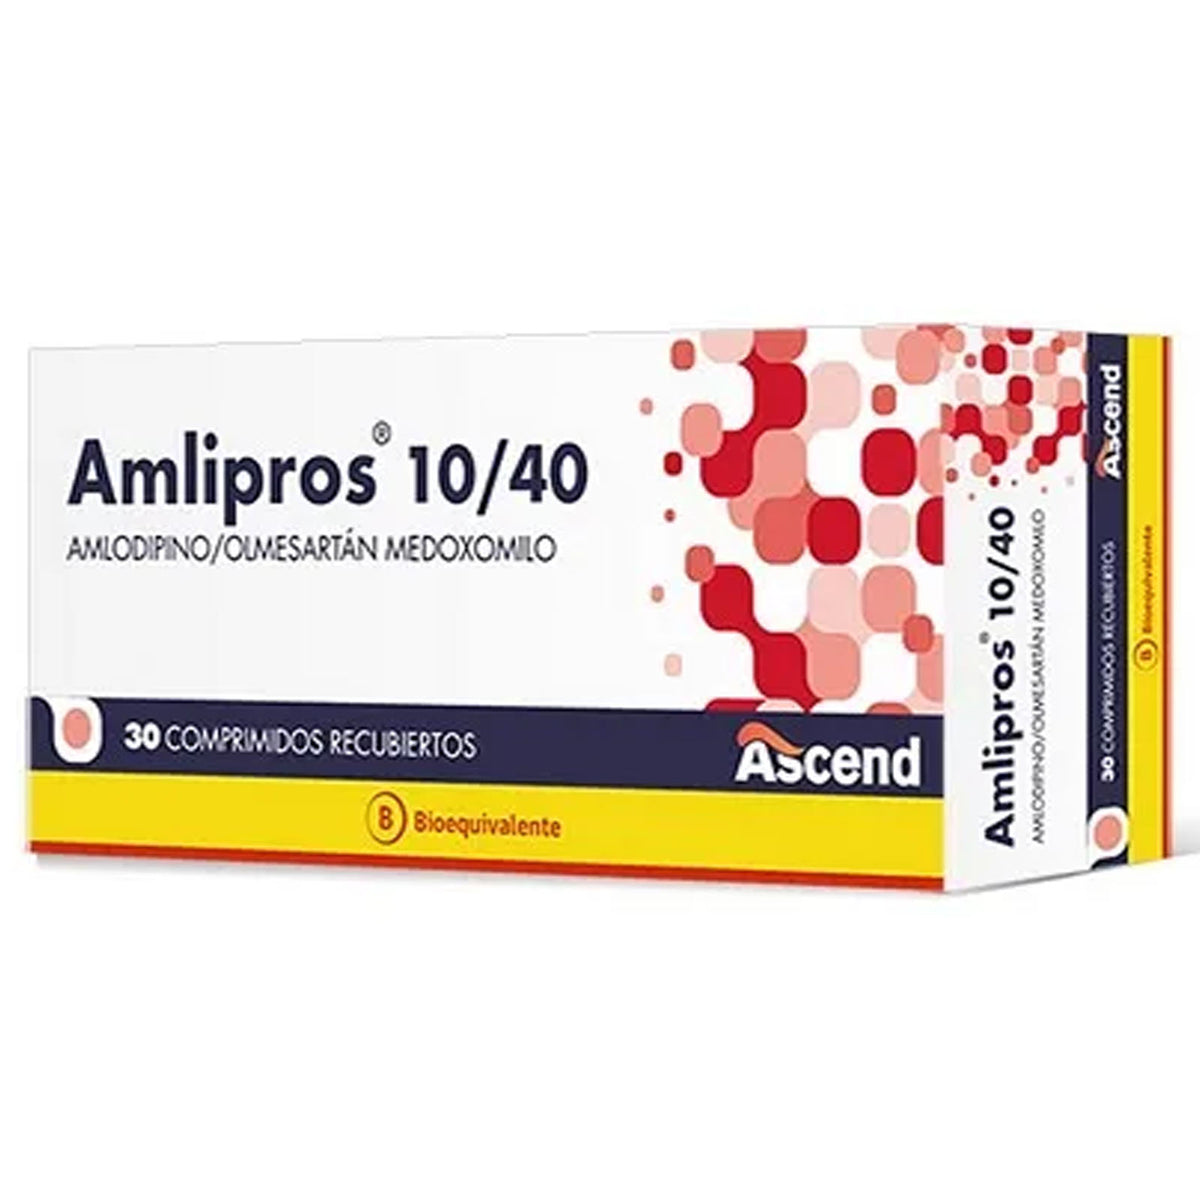 Amlipros Comprimidos Recubiertos 10/40